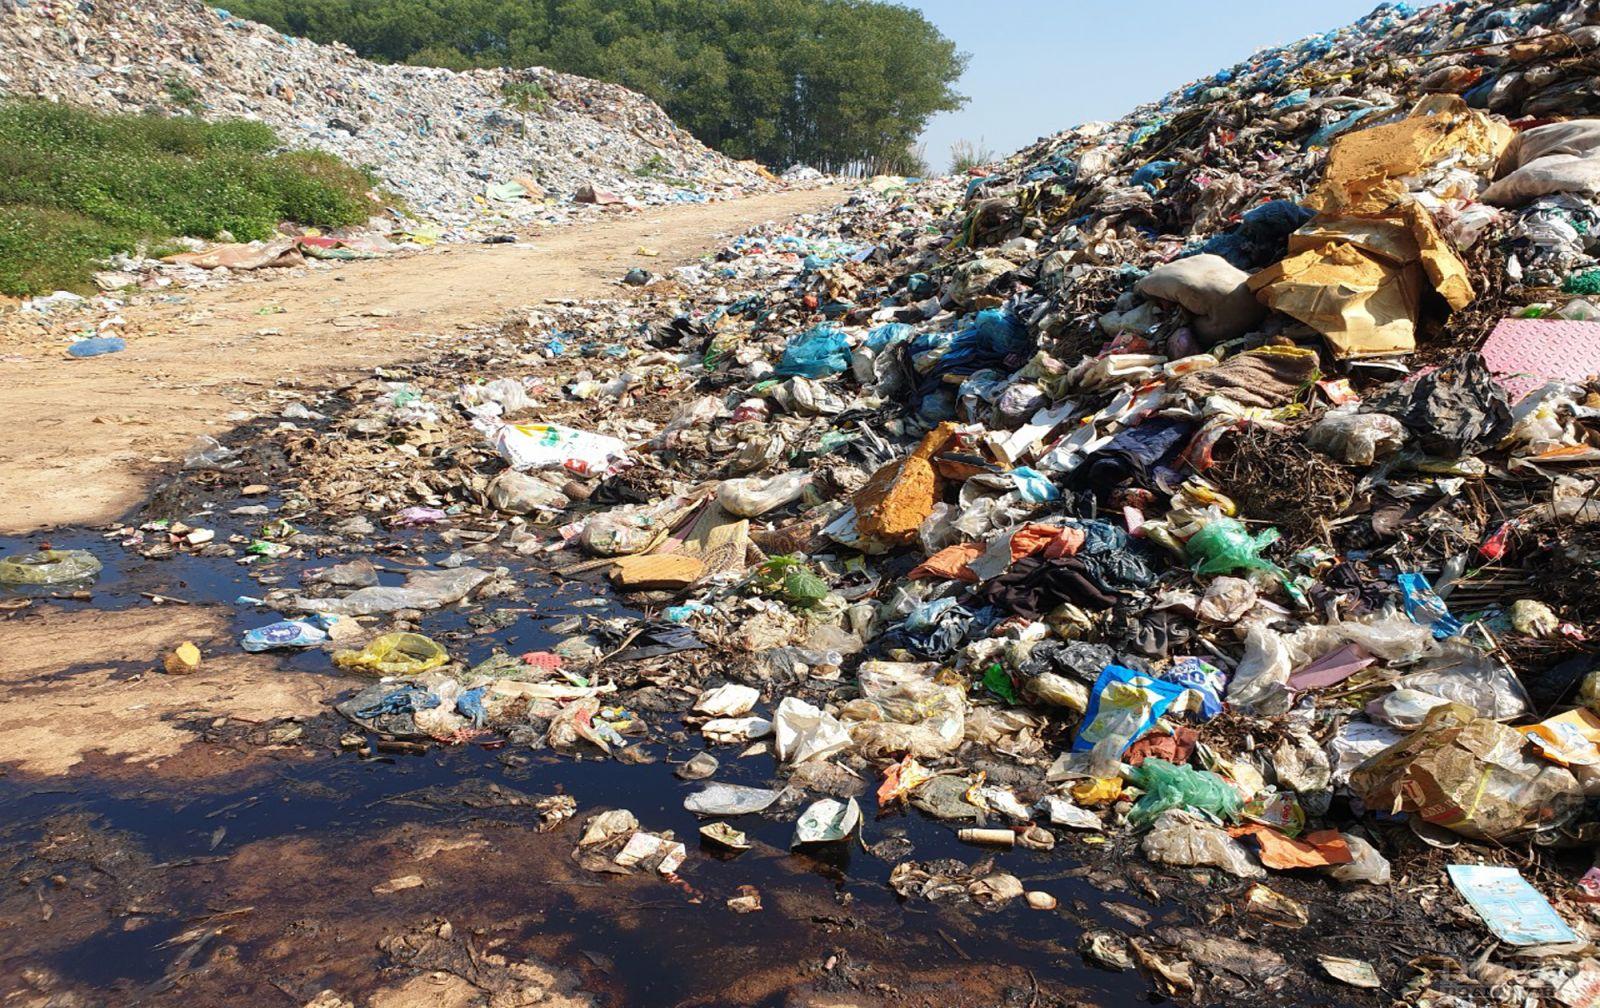 Bác rác thải ở phường Long Sơn, TX Thái Hòa mặc dù đã có dấu hiệu của sự “quá tải” nghiêm trọng, được chất đống thành “núi”, nước rỉ rác chảy lênh láng khắp nơi dù trời nắng